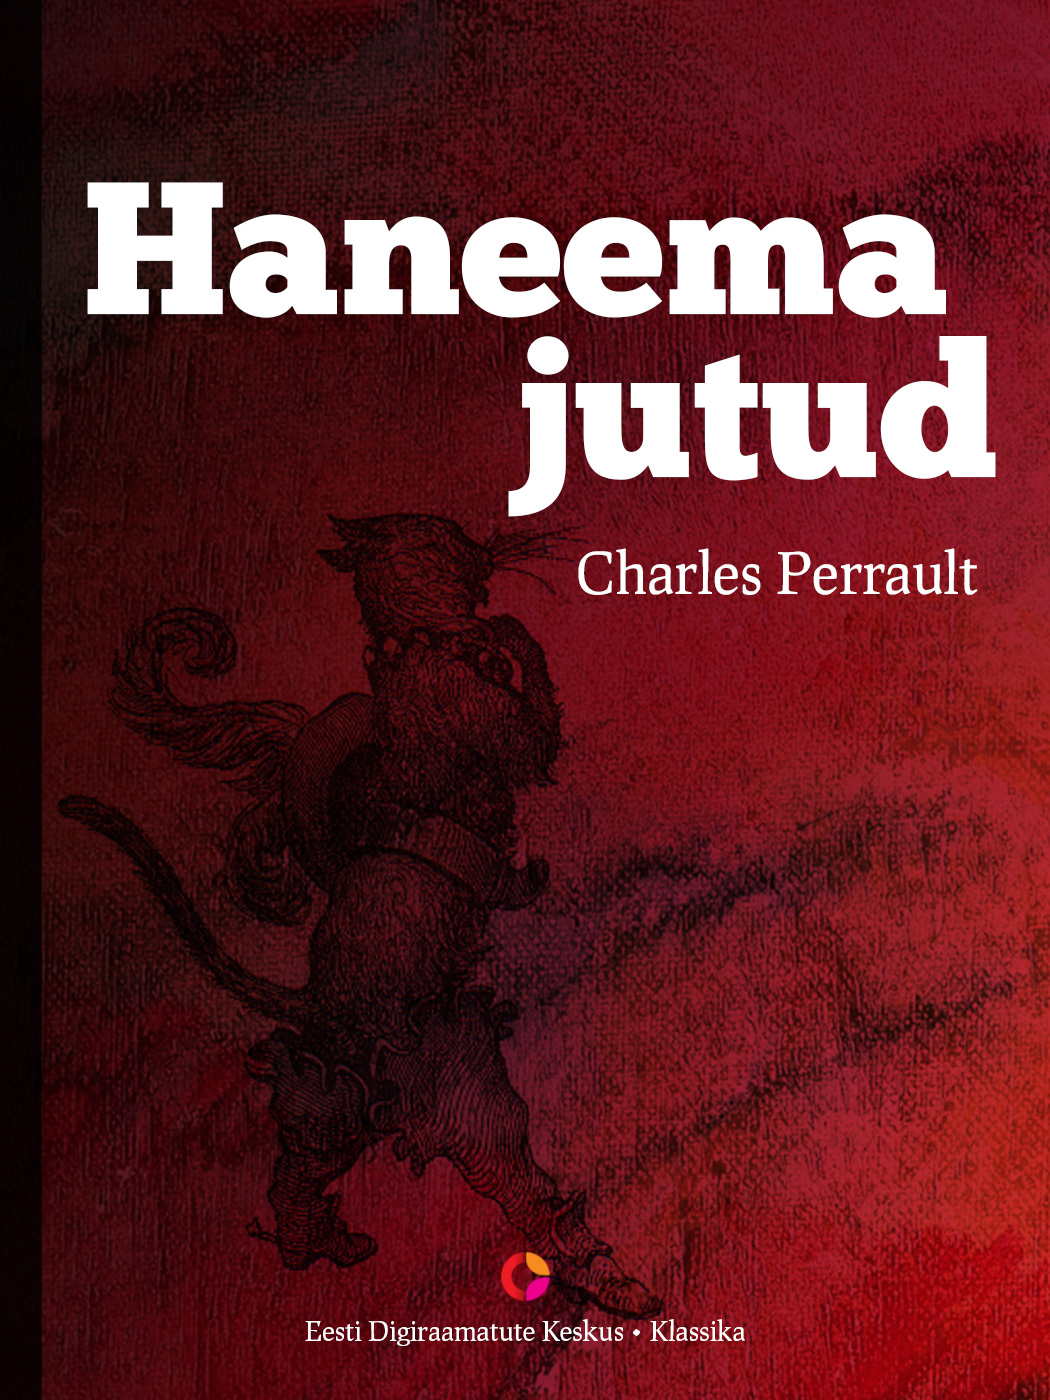 Книга Haneema jutud из серии , созданная Charles Perrault, может относится к жанру Зарубежная классика, Зарубежная старинная литература. Стоимость электронной книги Haneema jutud с идентификатором 21184652 составляет 298.37 руб.